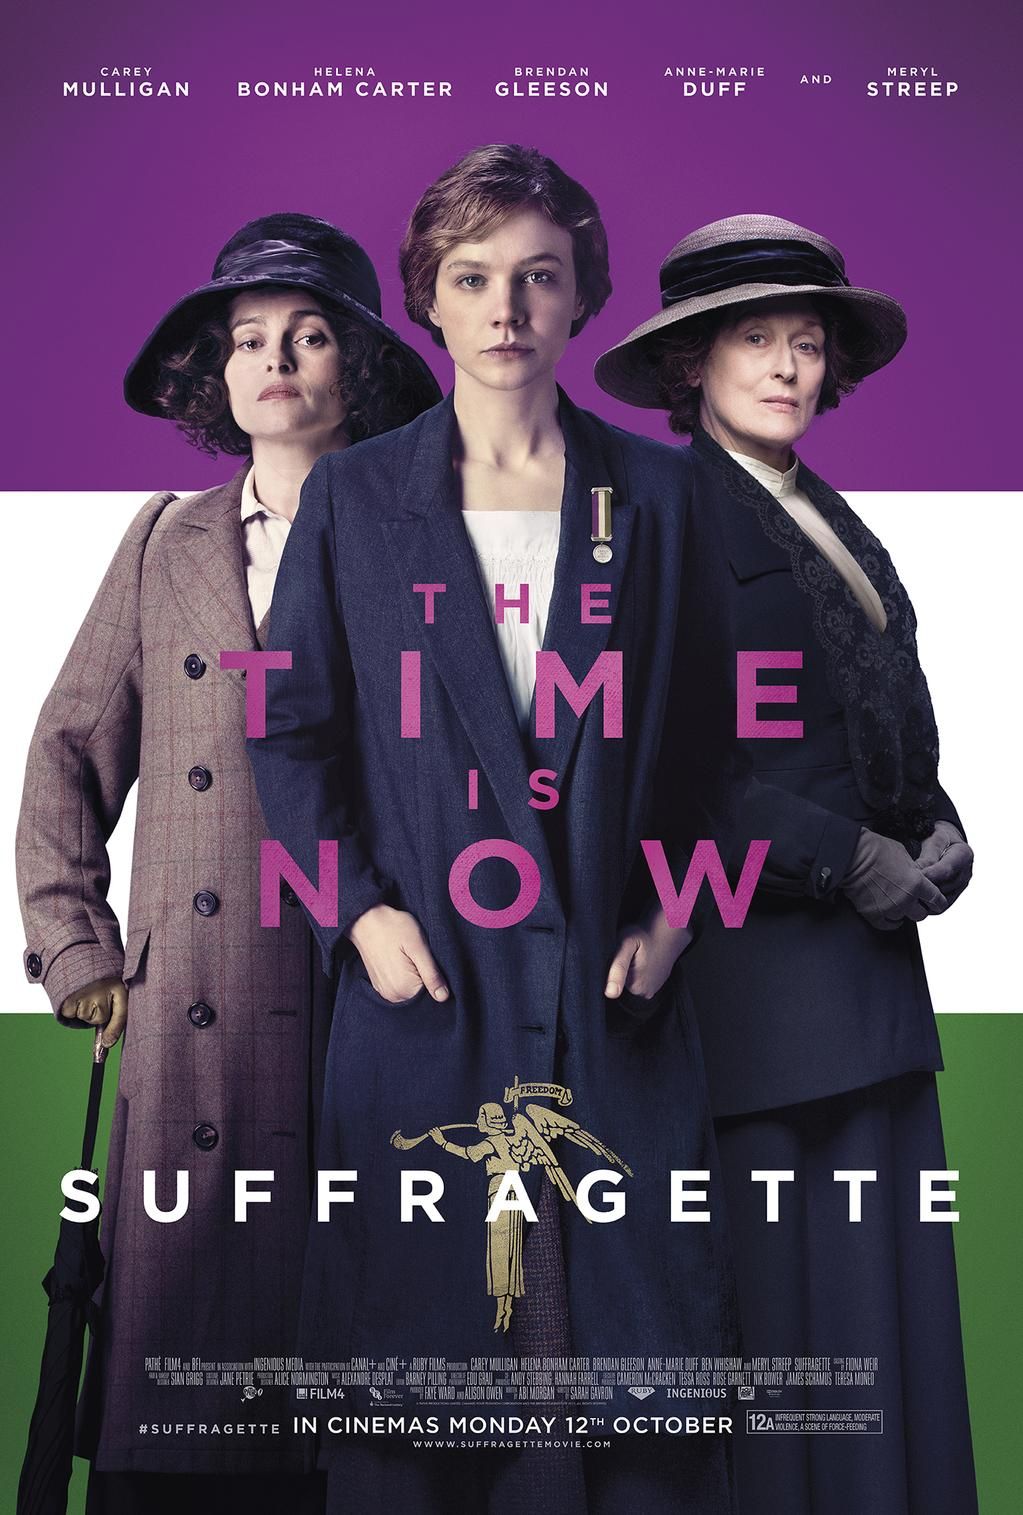 Film Club presents "Suffragette"